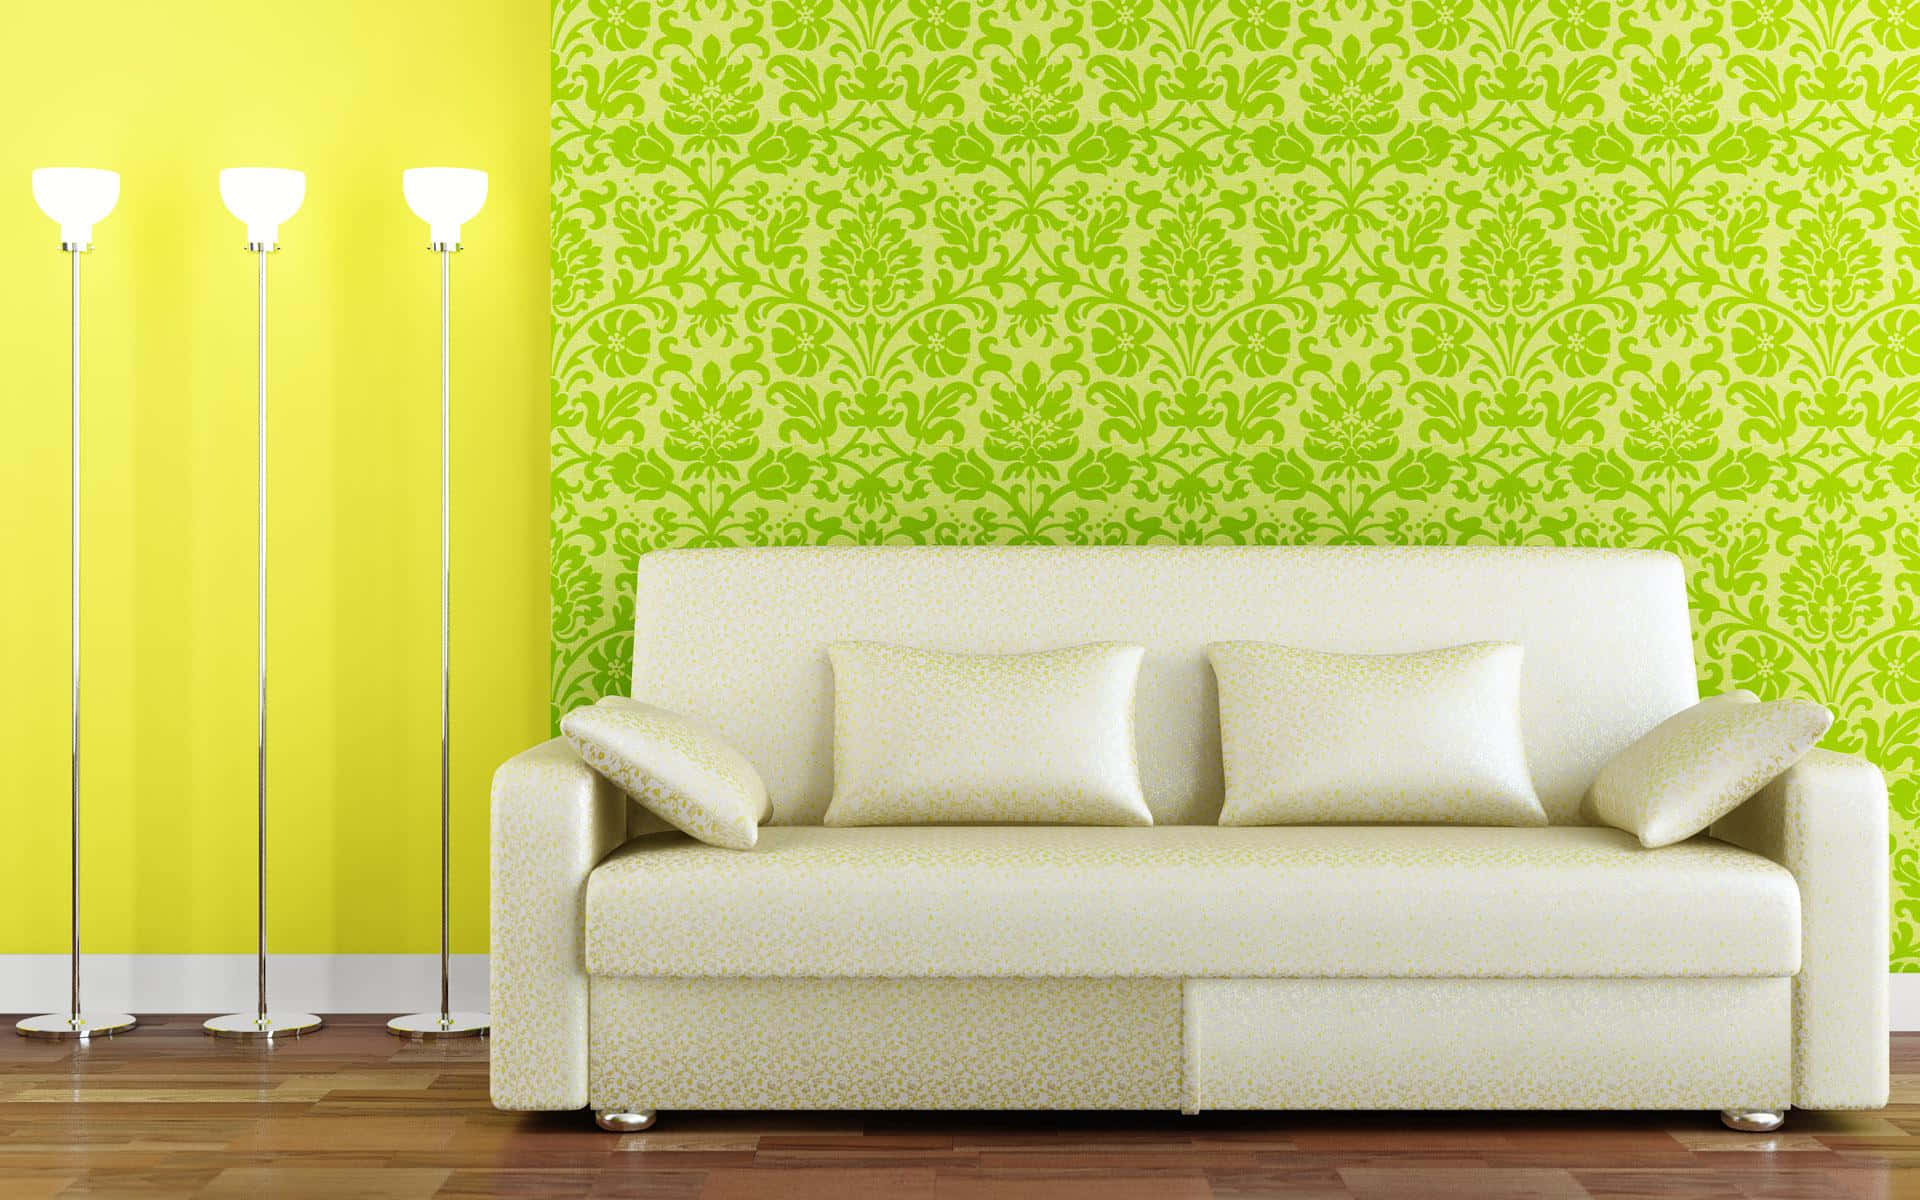 Einweißes Sofa In Einem Raum Mit Einer Gelben Wand.